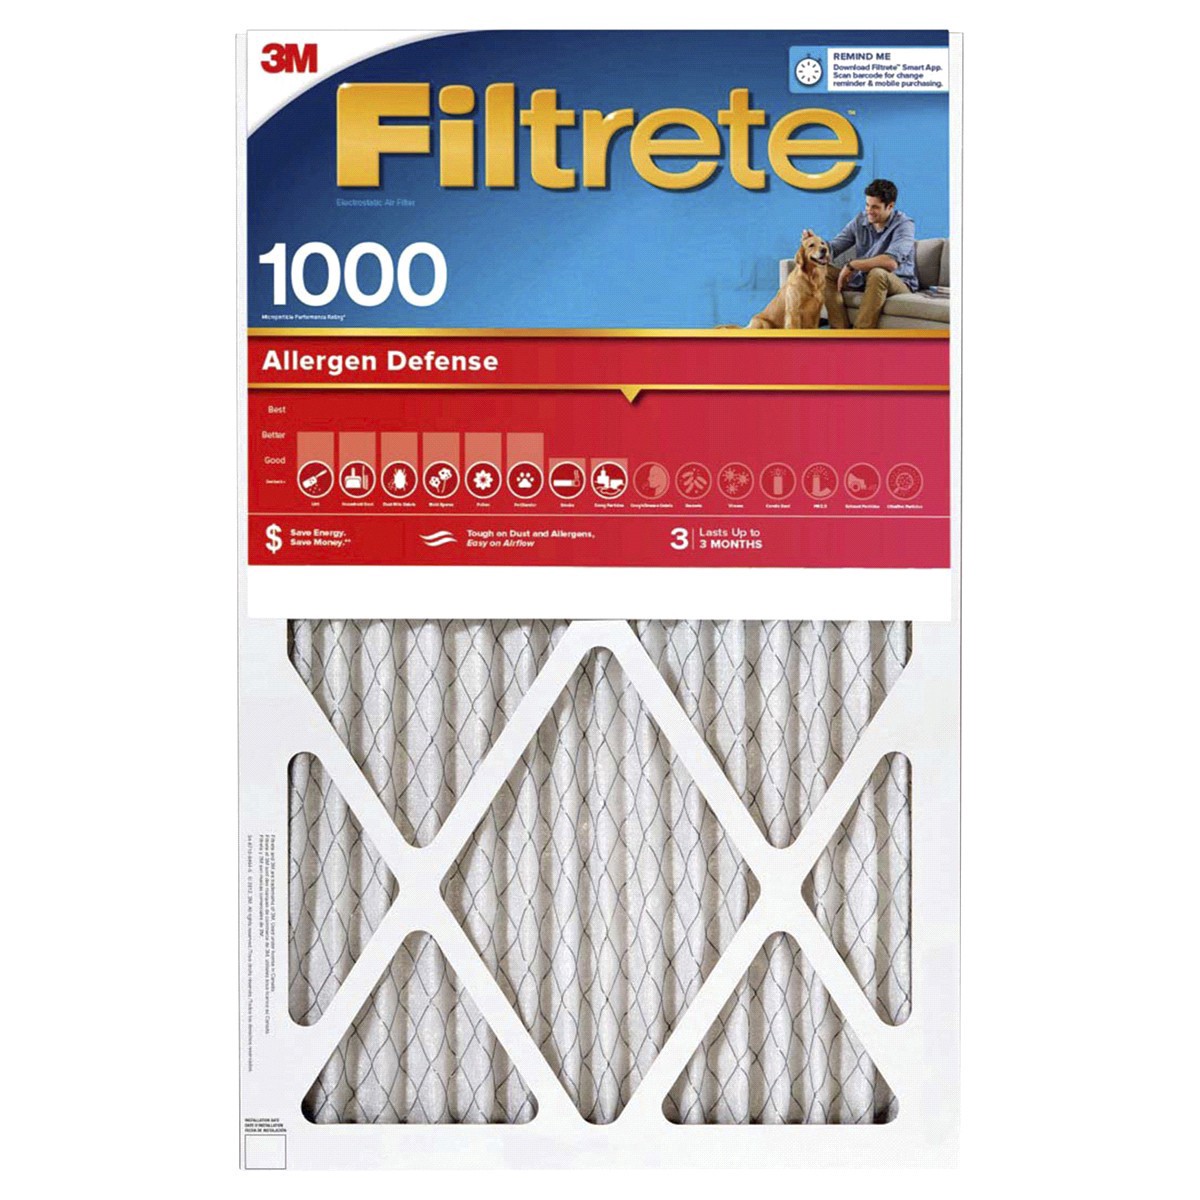 slide 1 of 29, 3M Filtrete Allergen Defense Protection 1000 Micro Allergen Filter, 20 in x 25 in